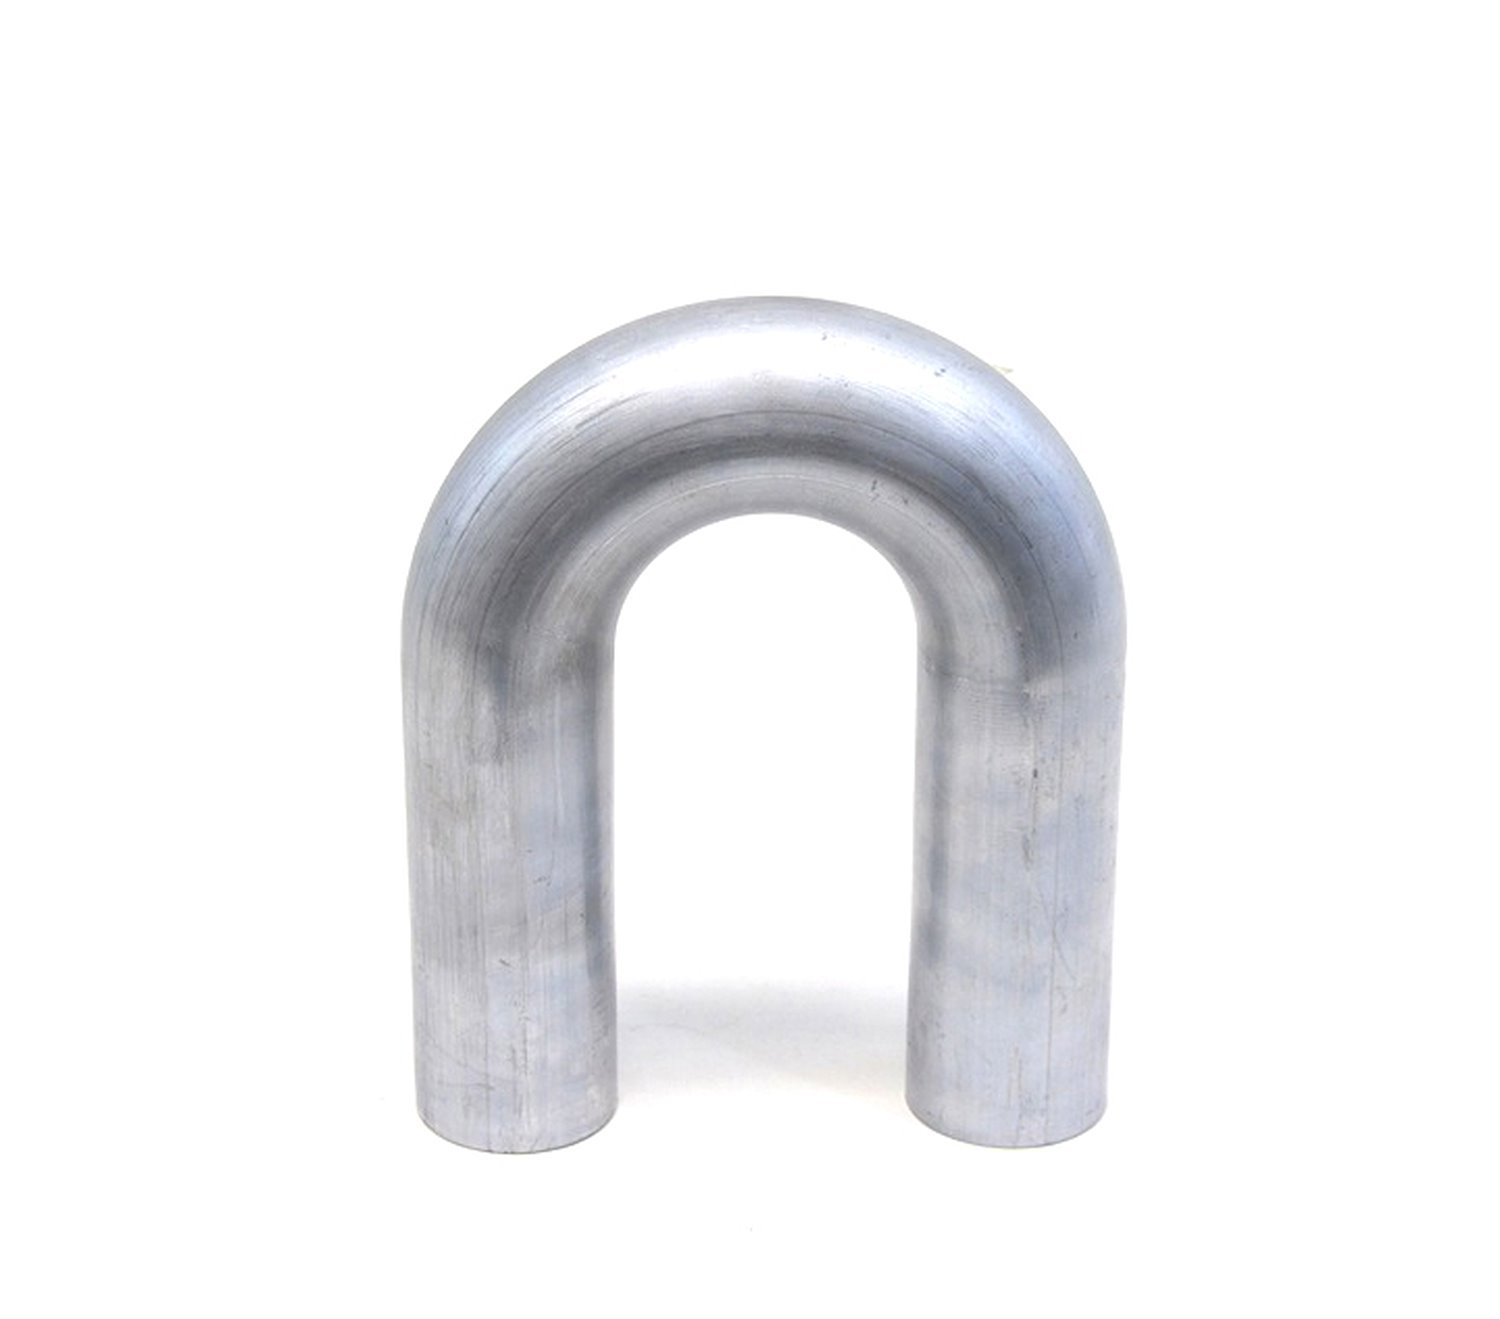 AT180-138-CLR-175 Aluminum Elbow Tube, 6061 Aluminum, 180-Degree U Bend Elbow Tubing, 1-3/8 in. OD, Tight Radius, 1-3/4 in. CLR